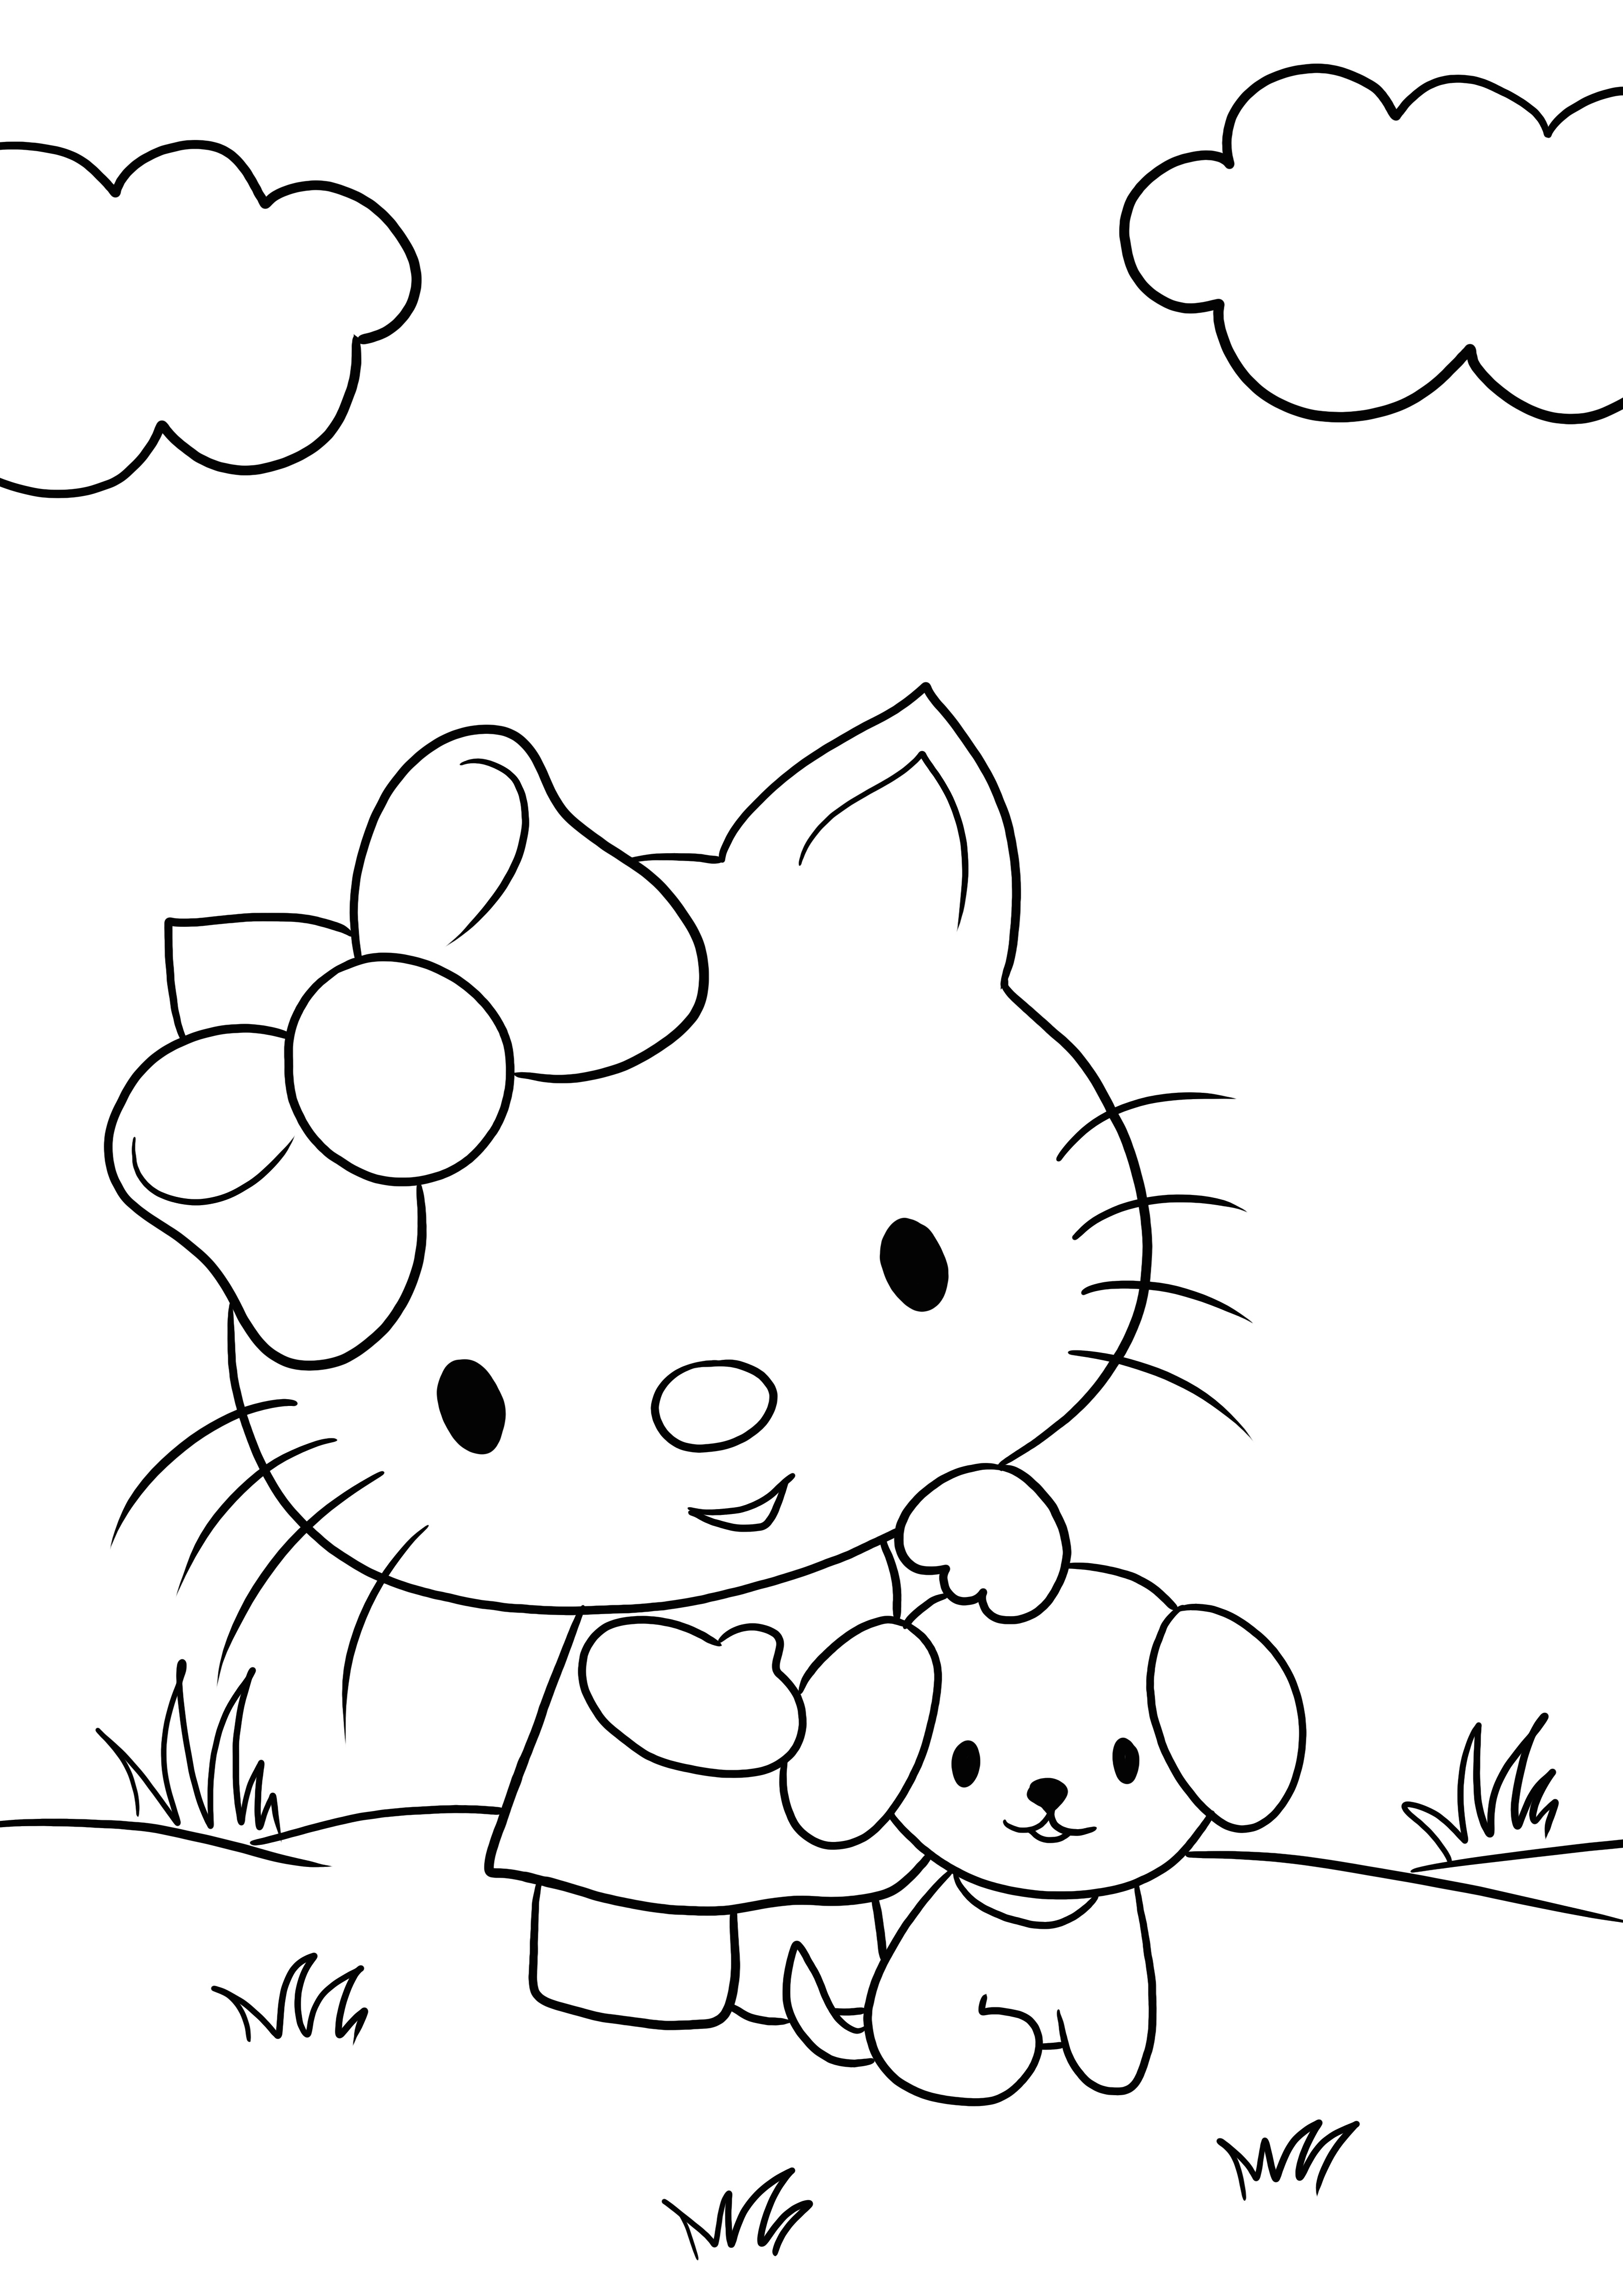 Hello Kitty dan cetakan kecil bebas anak anjing untuk mewarnai untuk anak-anak